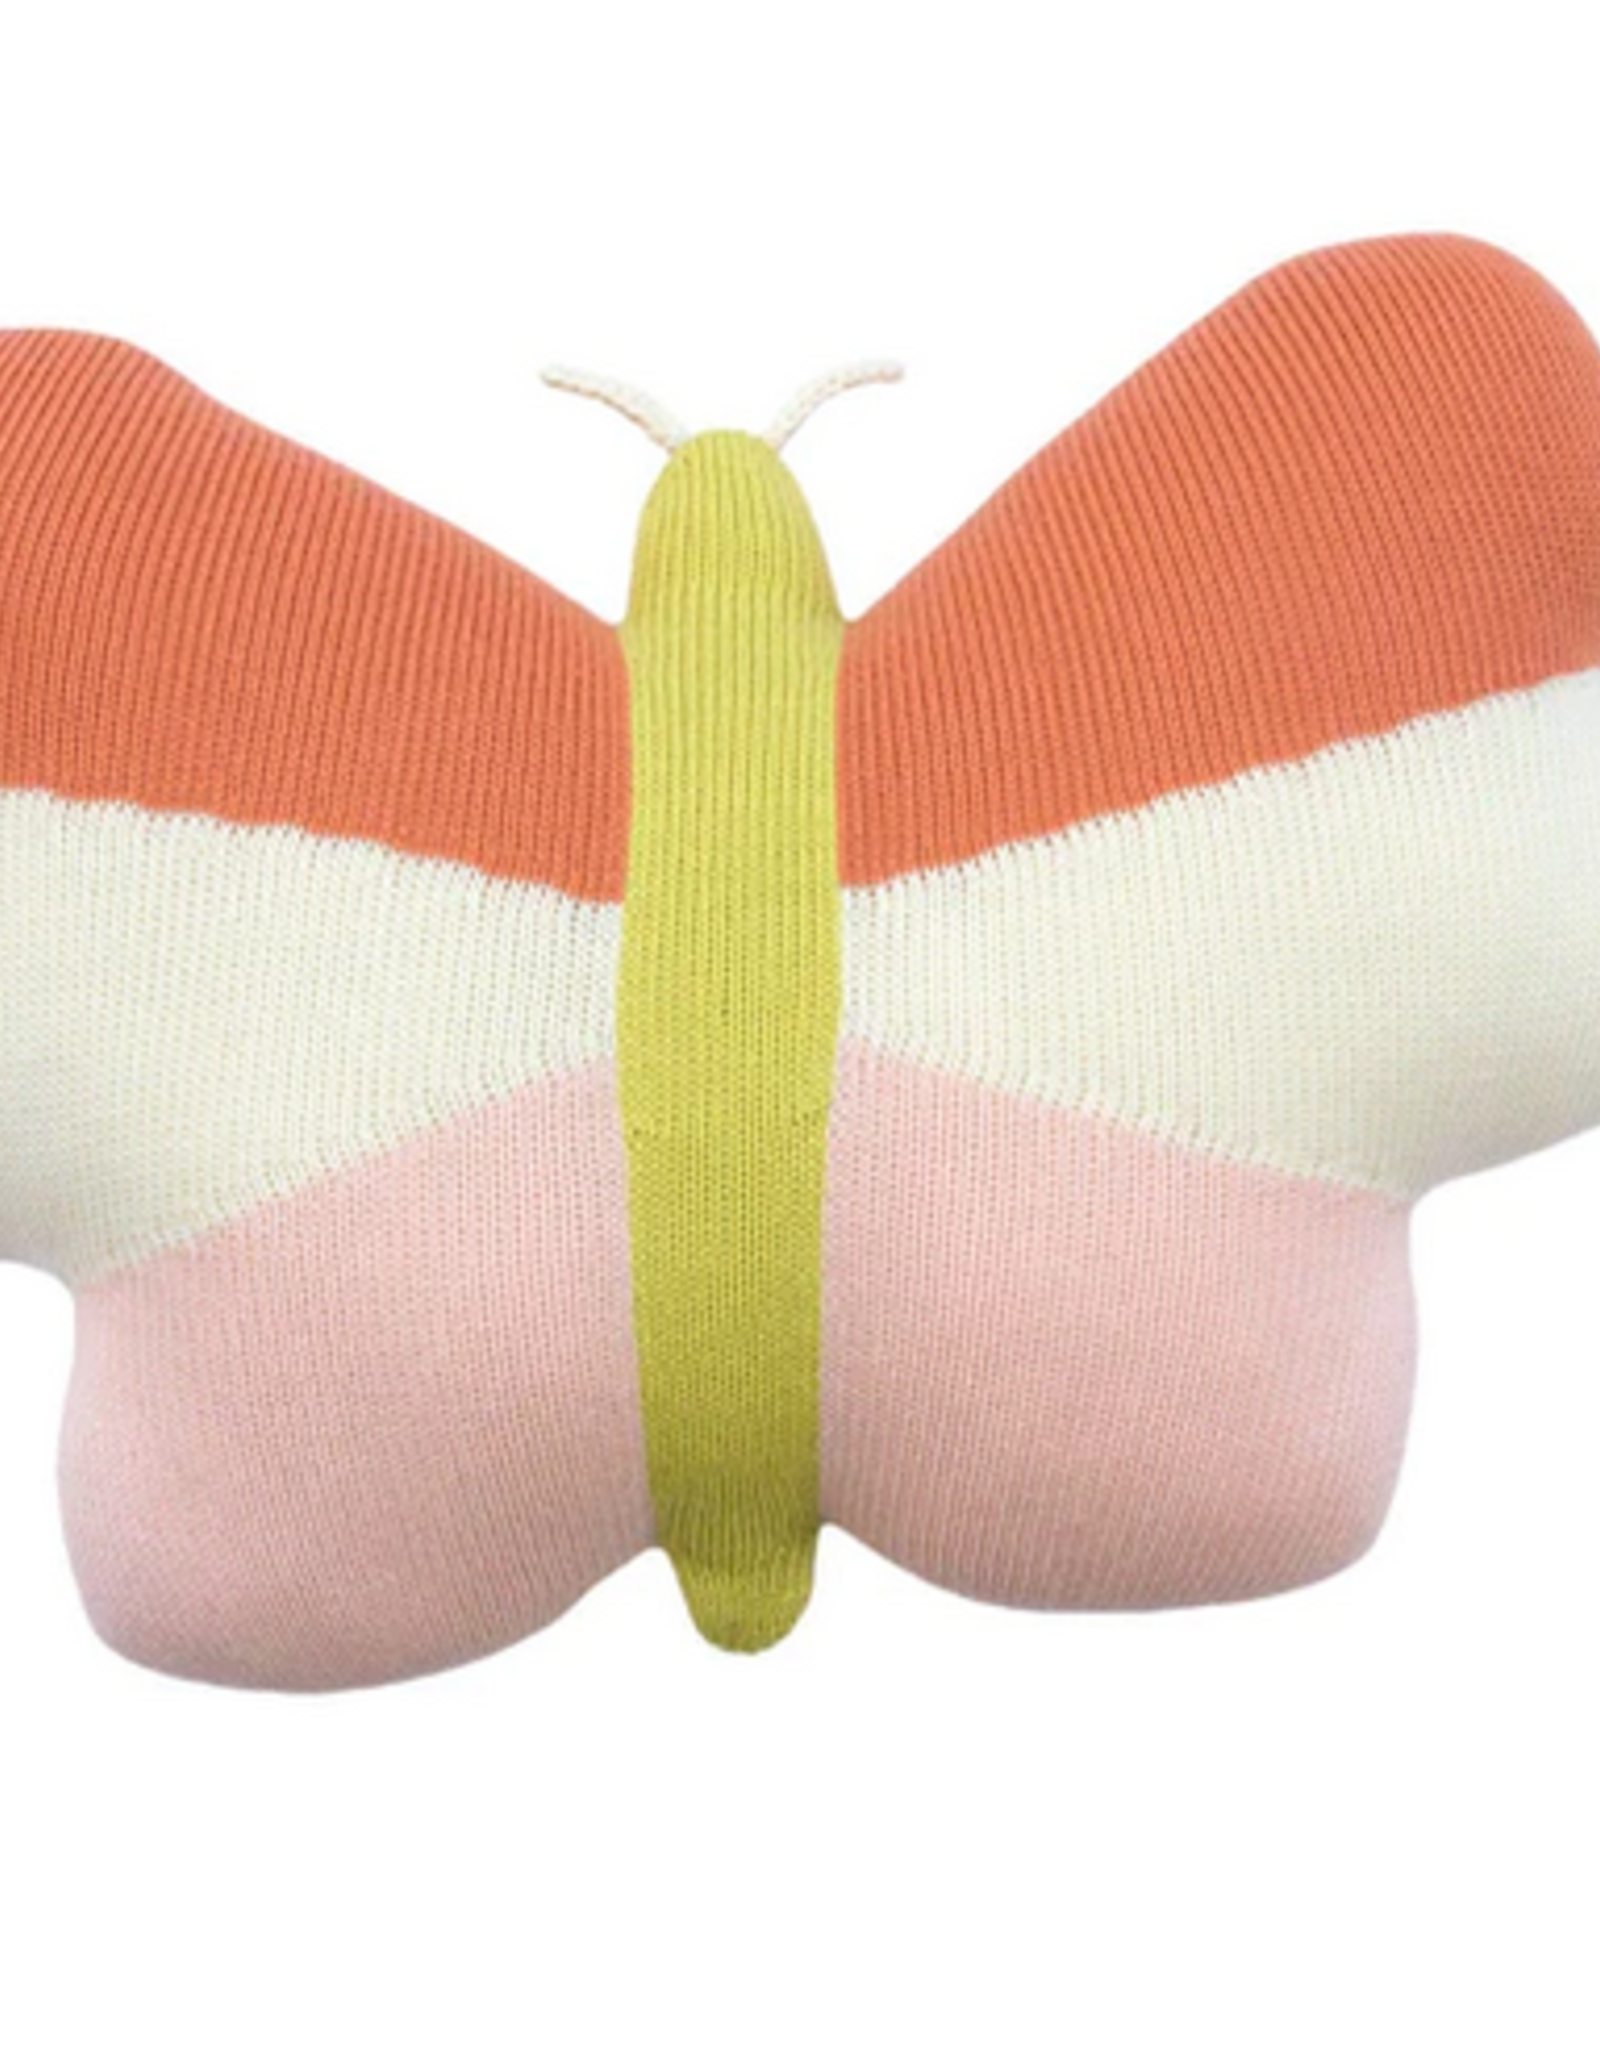 Blabla Butterfly Pillow